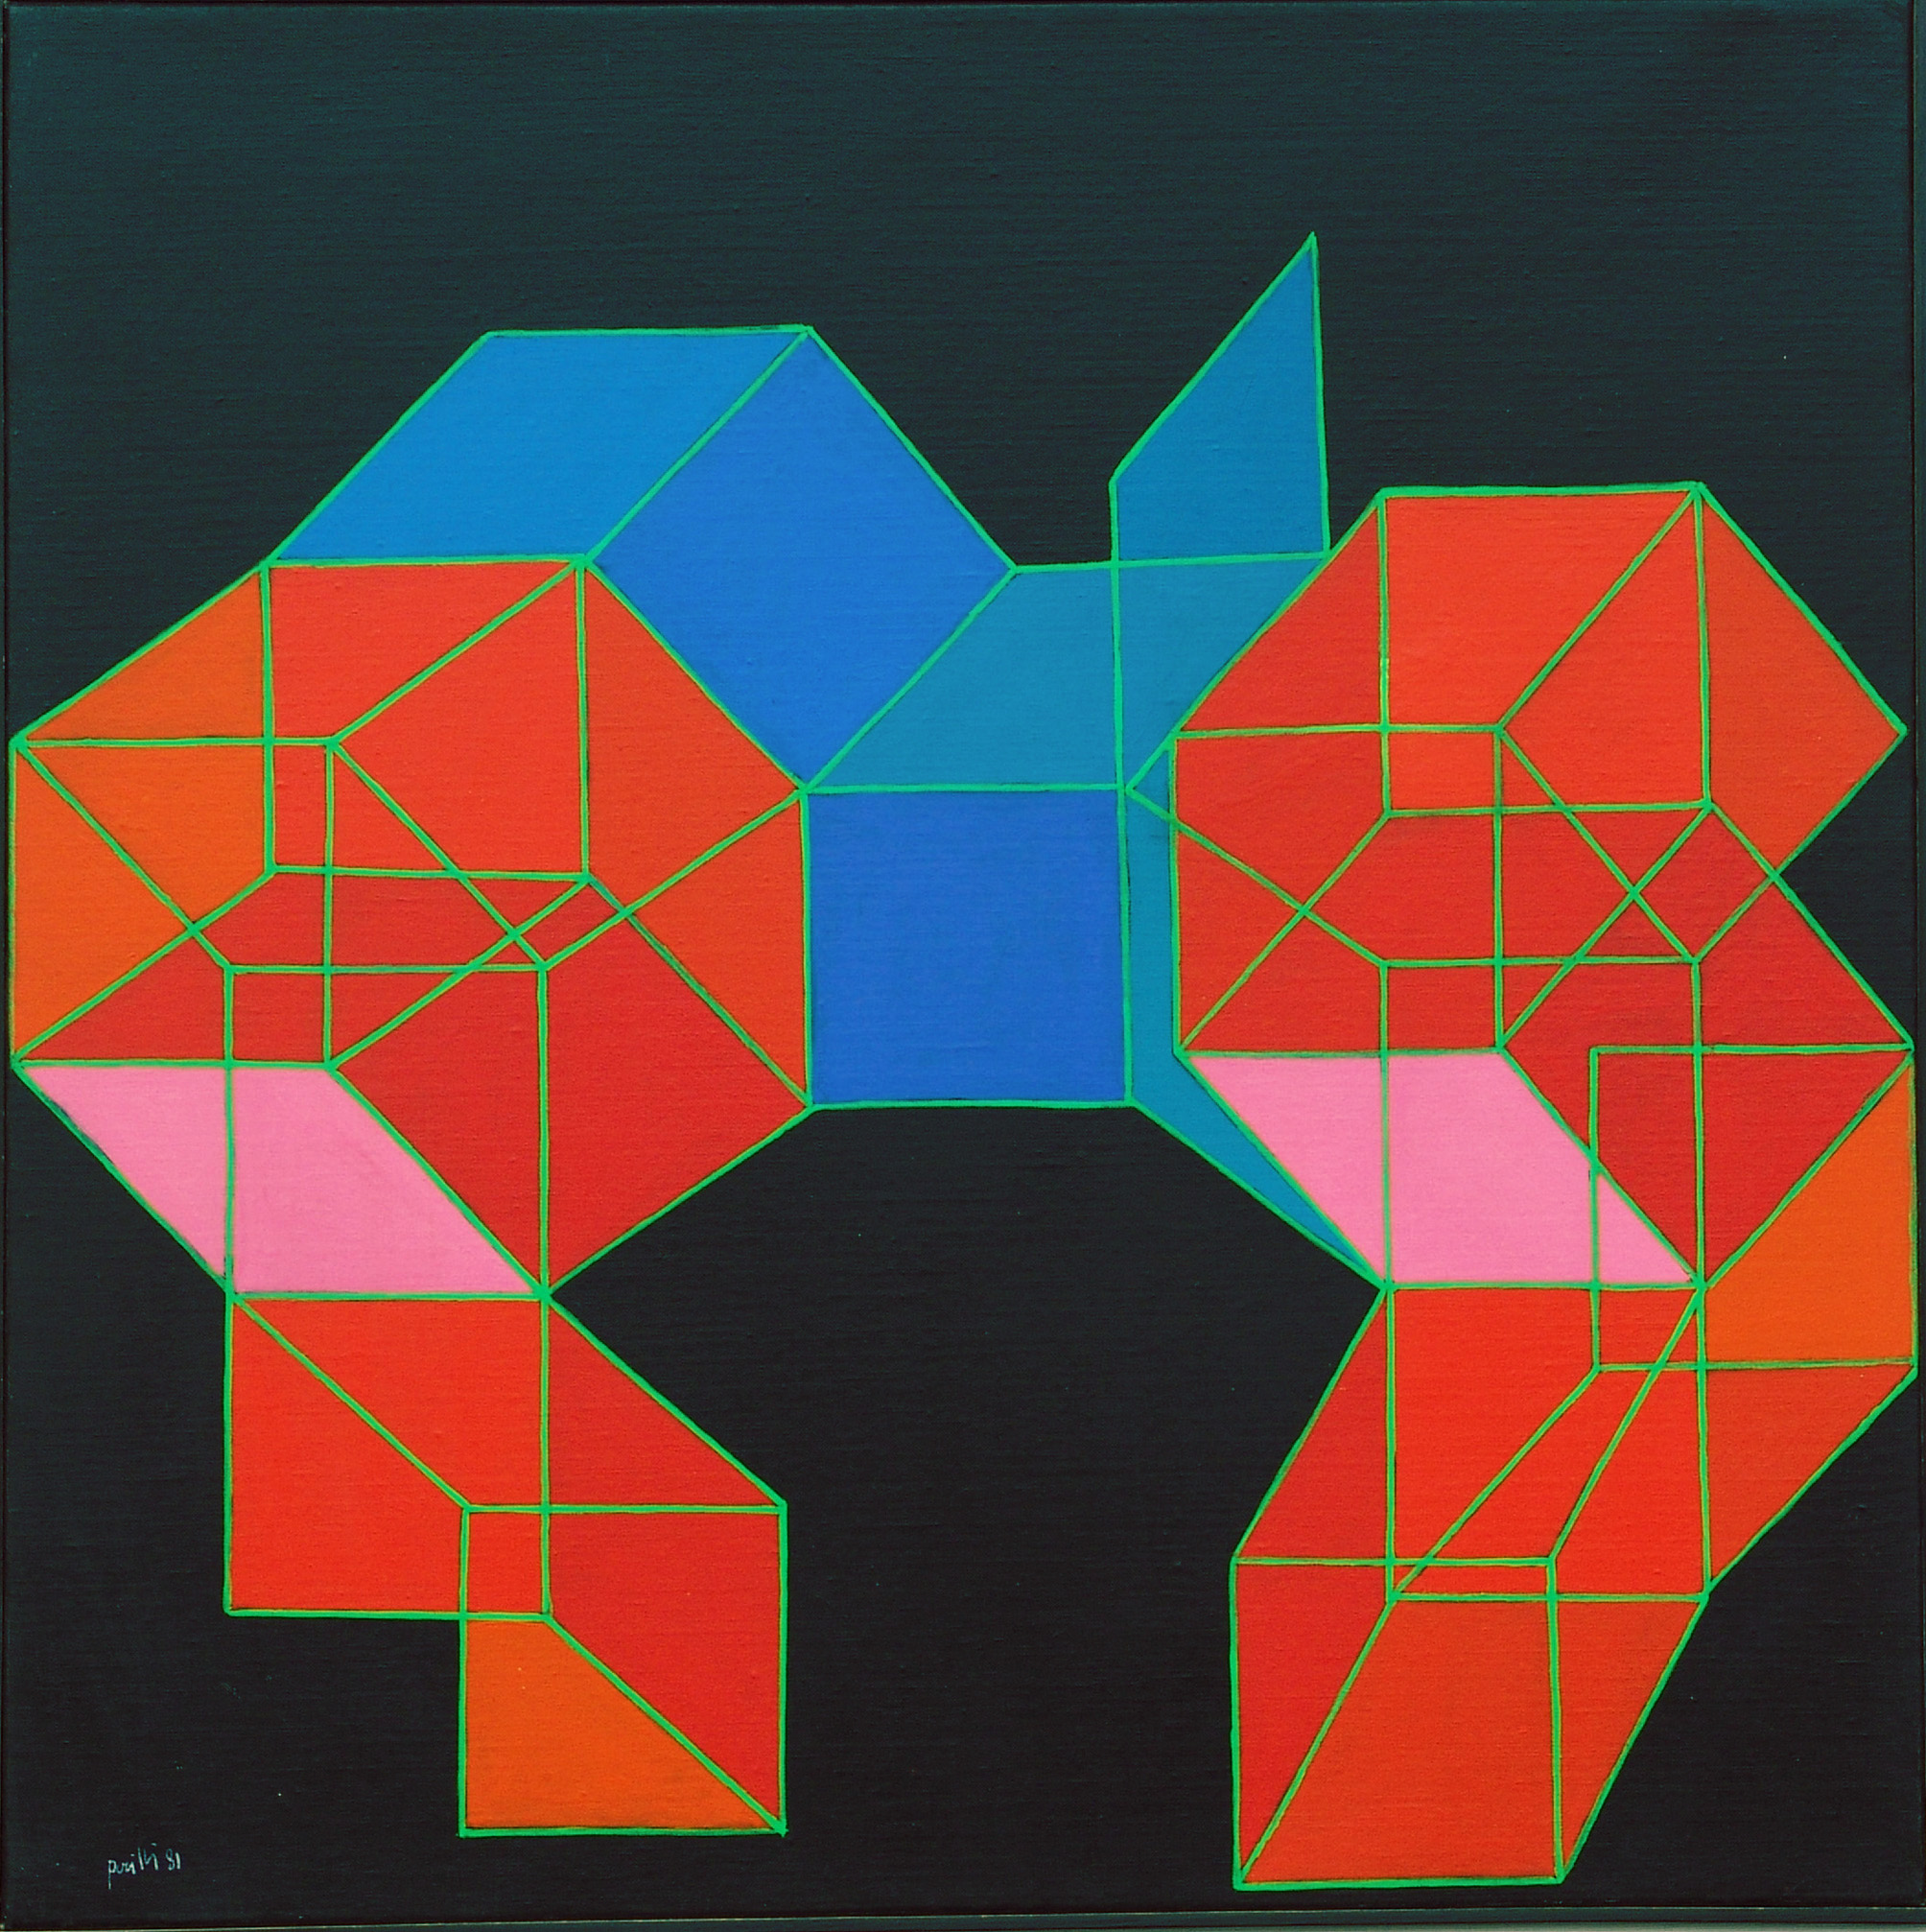 Achille Perilli, La visione geometrica, 1981. Acrilici su tela cm. 60x60